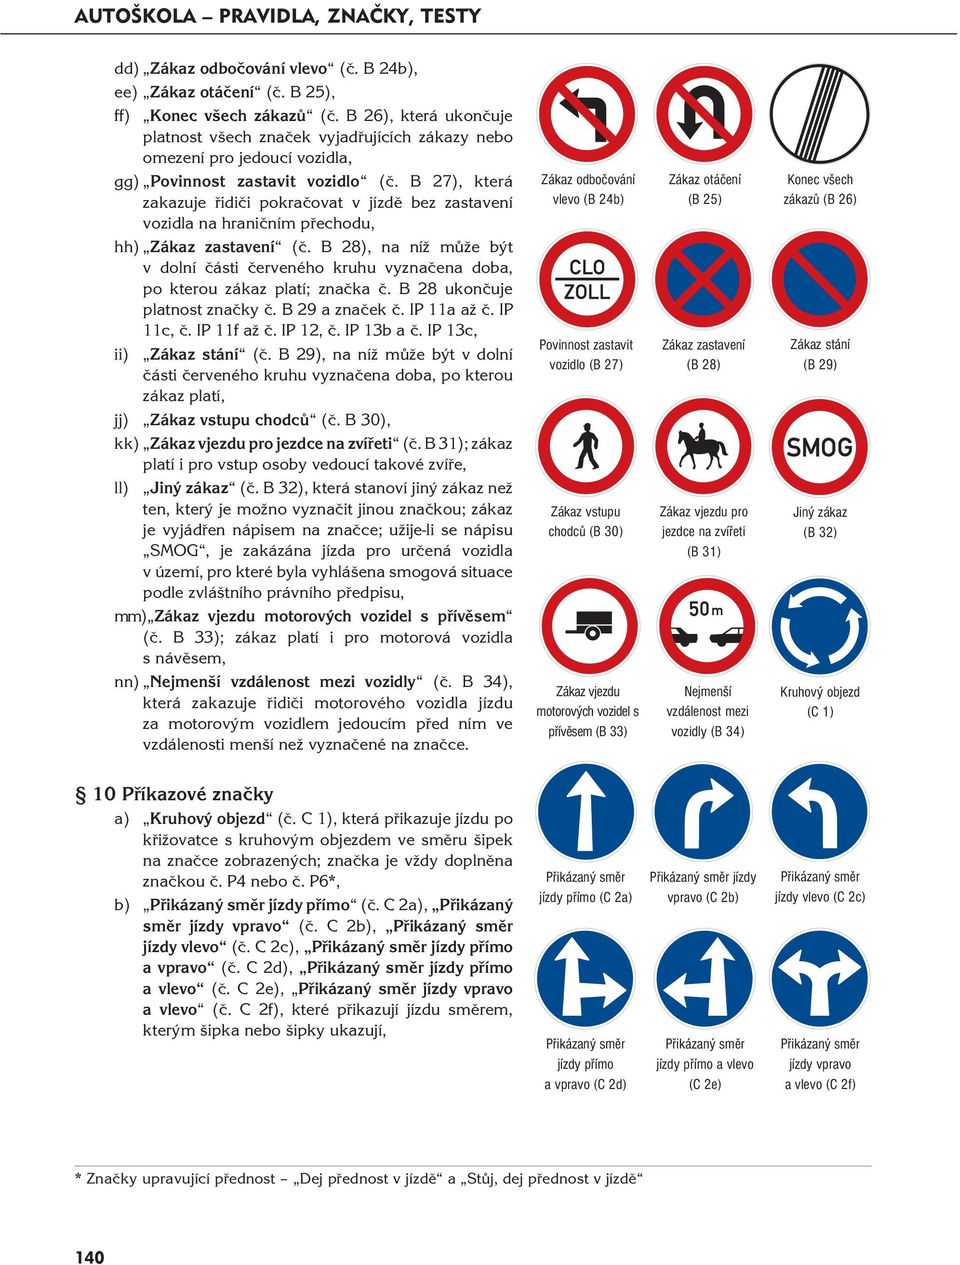 B 27), která zakazuje řidiči pokračovat v jízdě bez zastavení vozidla na hraničním přechodu, hh) Zákaz zastavení (č.